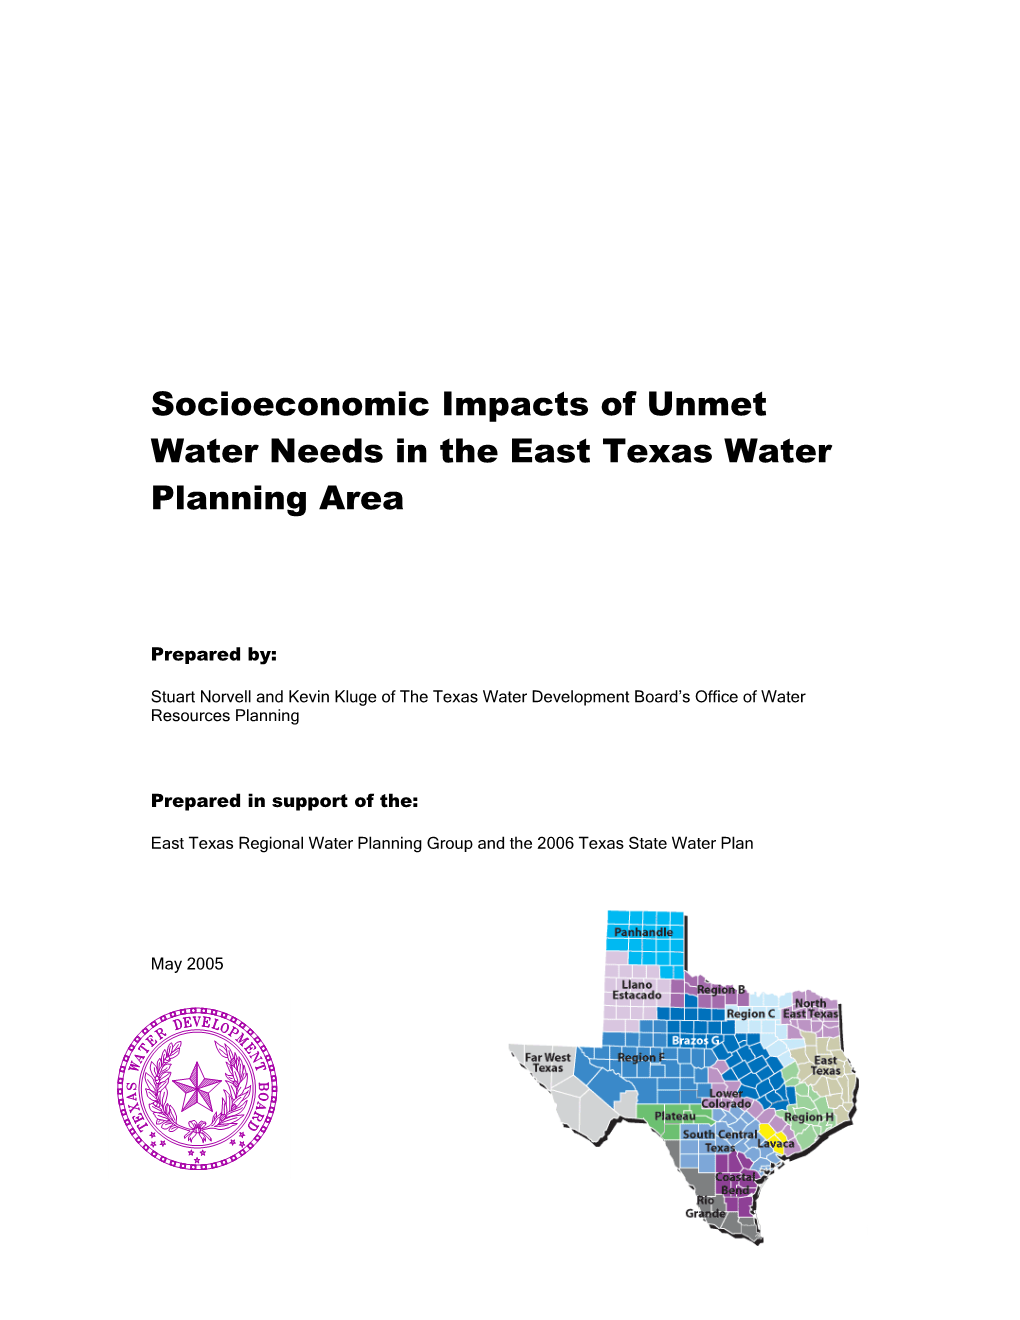 Socioeconomic Impacts of Unmet Water Needs in the East Texas Water Planning Area s1